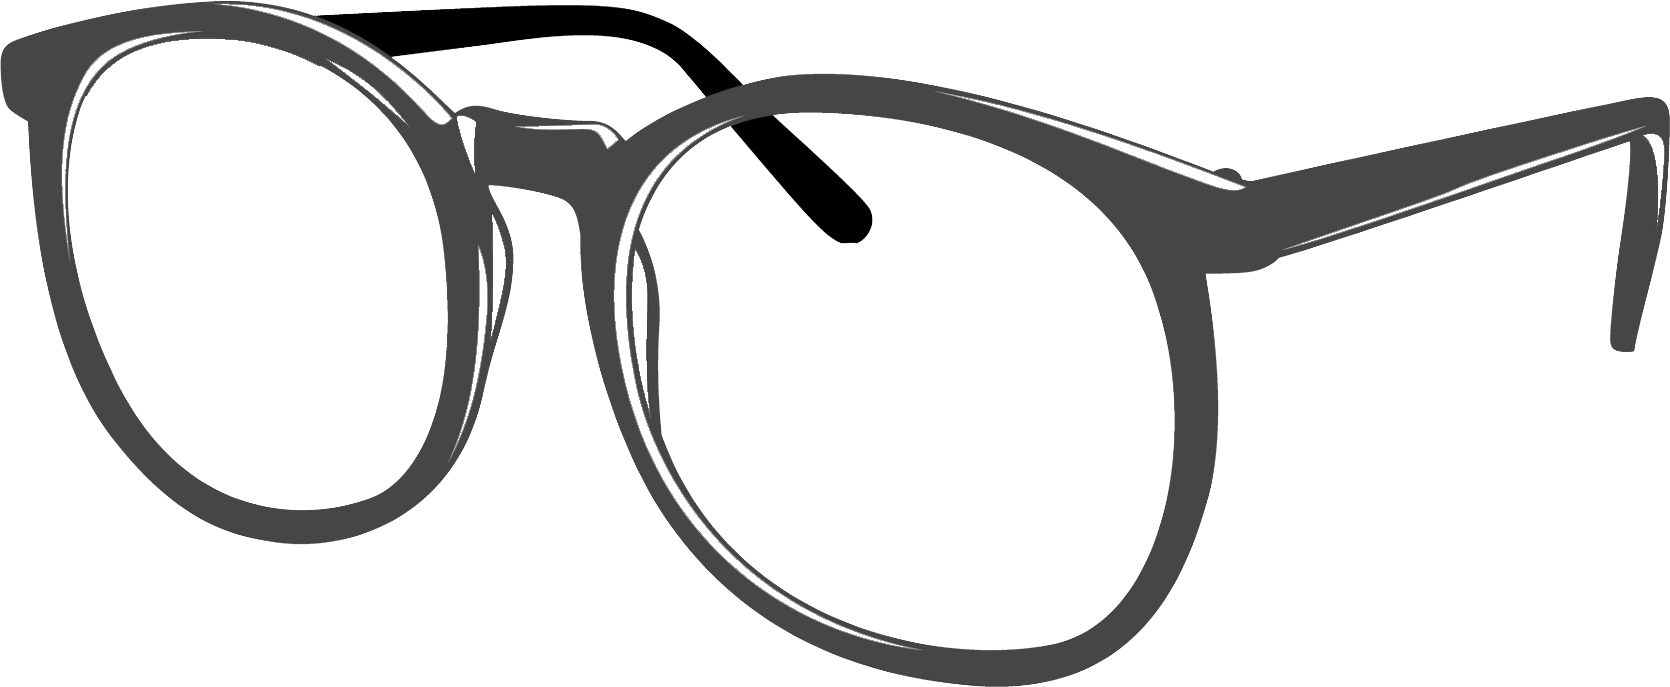 Glasses clipart 5 - Clip Art Glasses